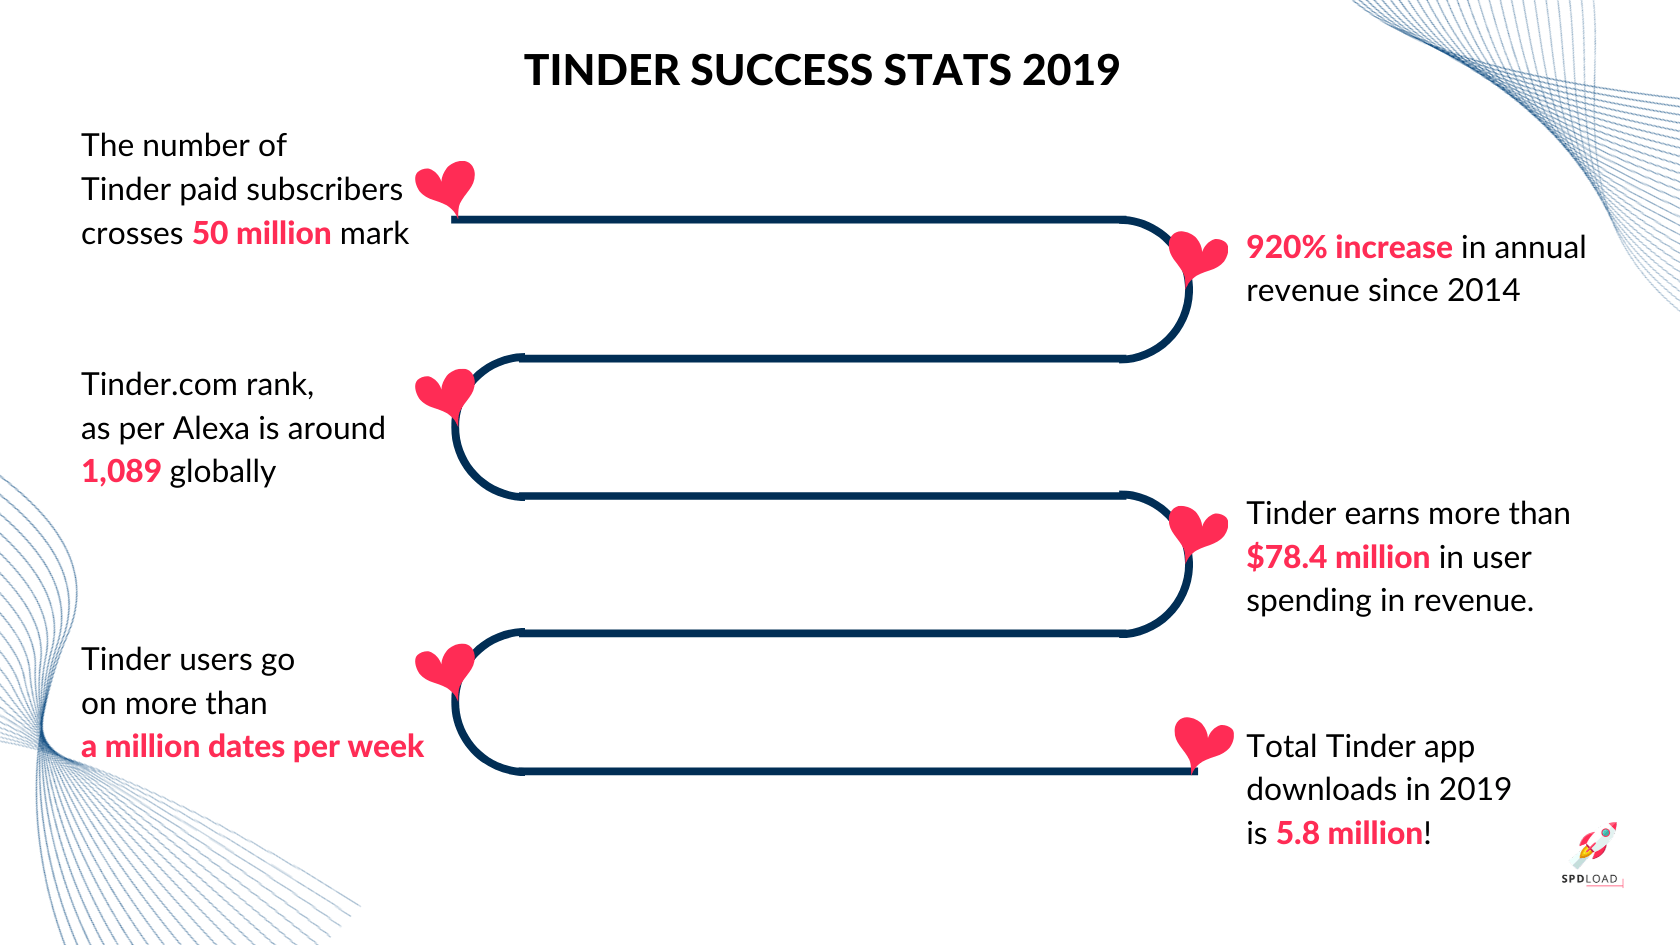 Tinder success stats 2019